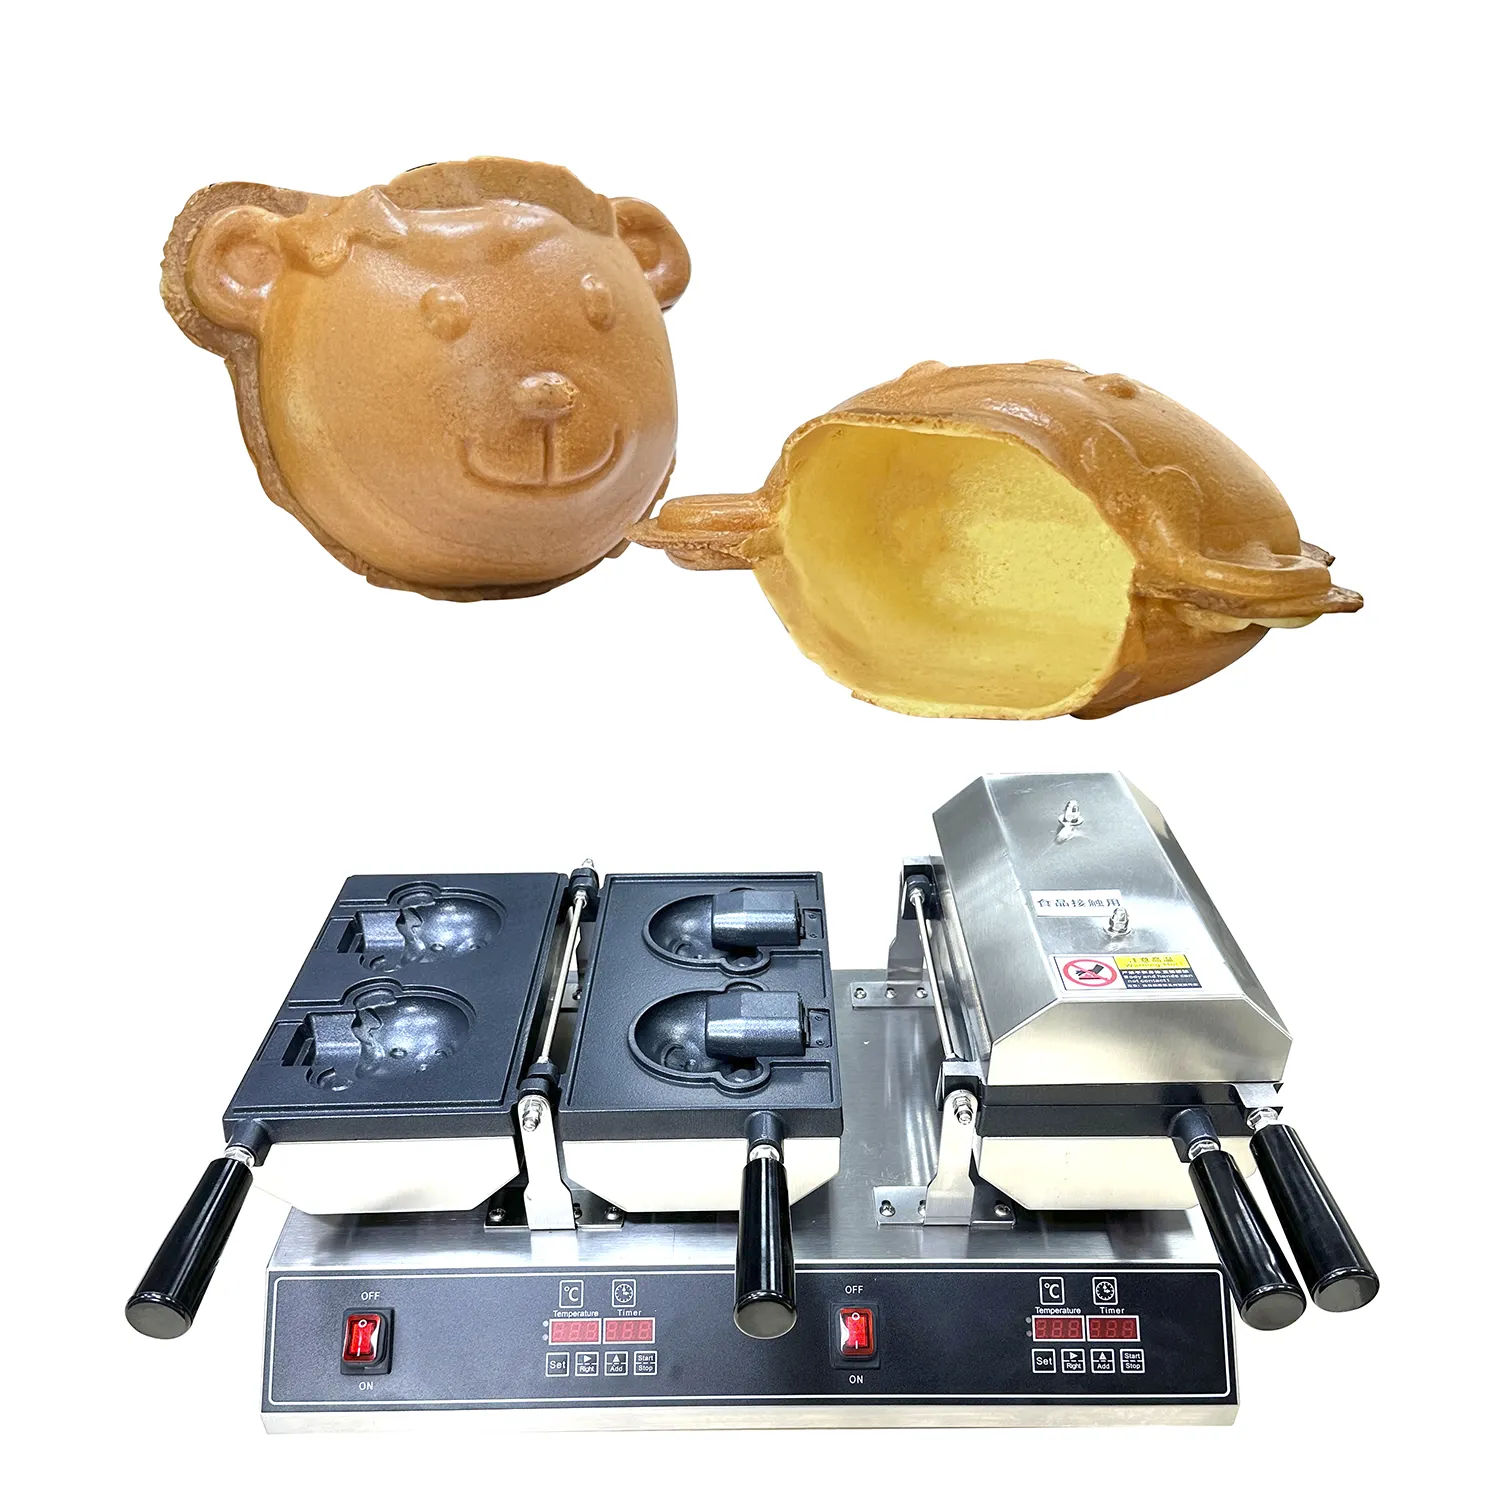 Kommerzielle Maschine für kleine Geschäfts ideen Open Mouth Bären form Taiyaki Ice Cream elektrische Waffeleisen Maschine